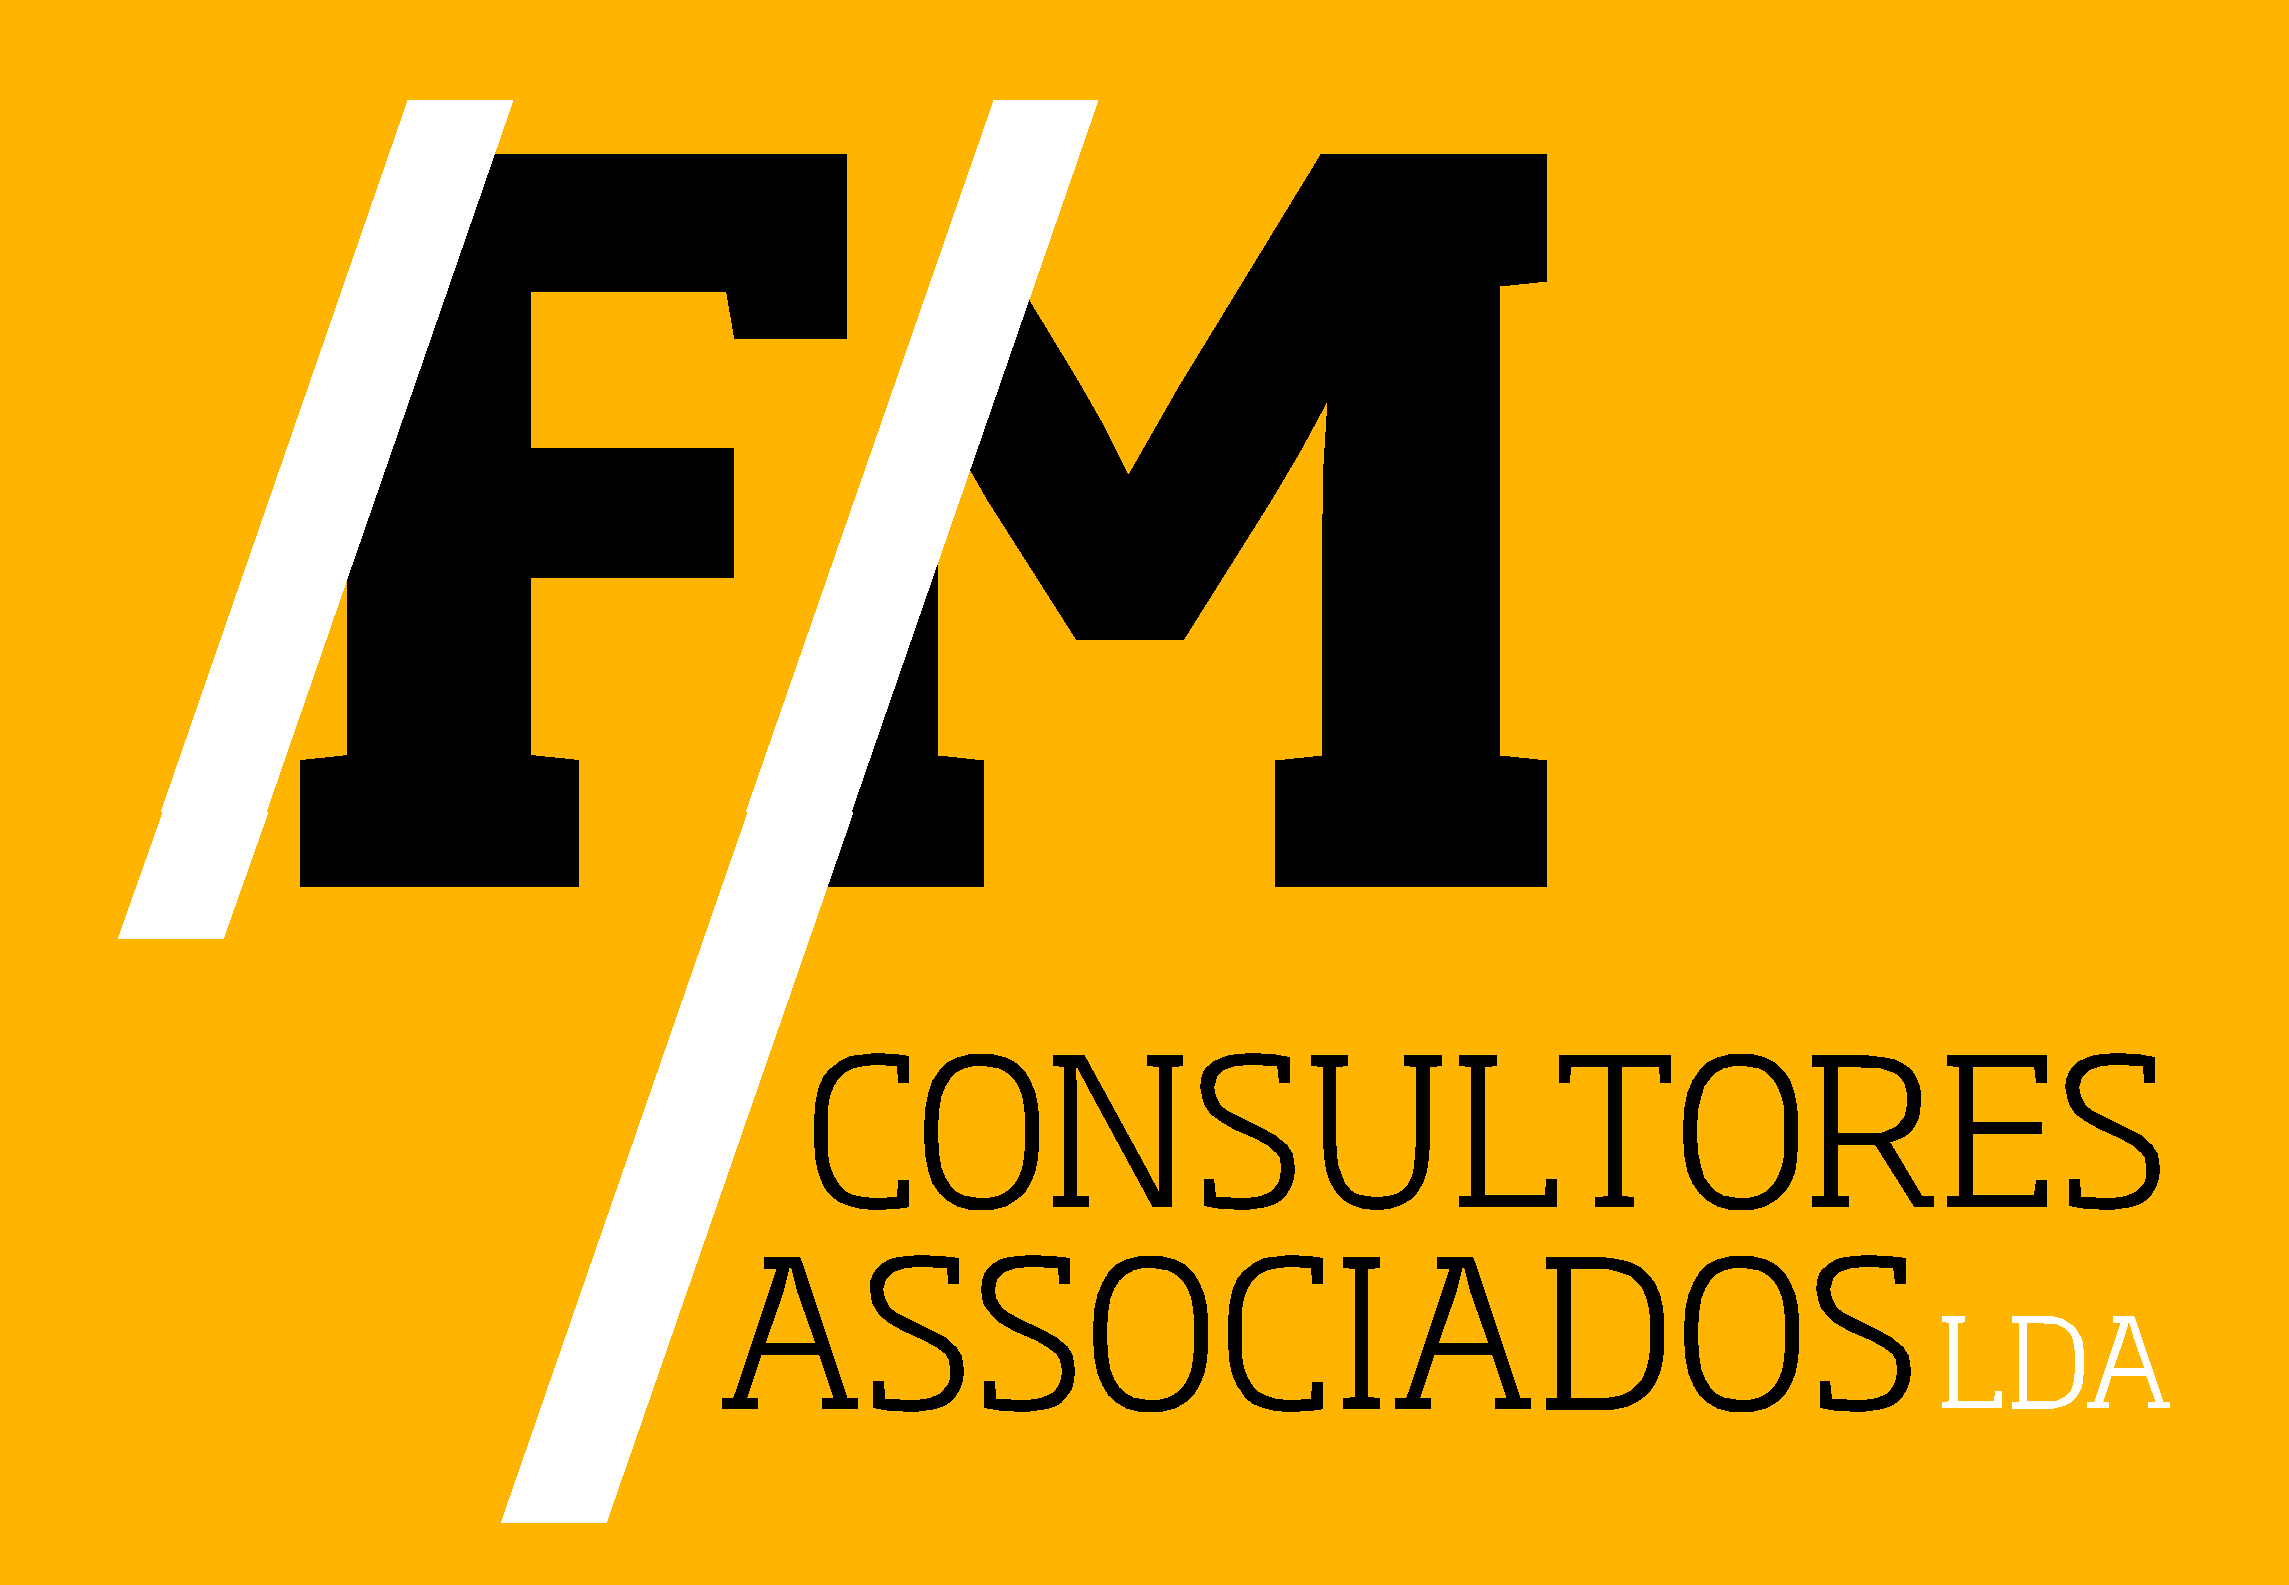 fm-logo